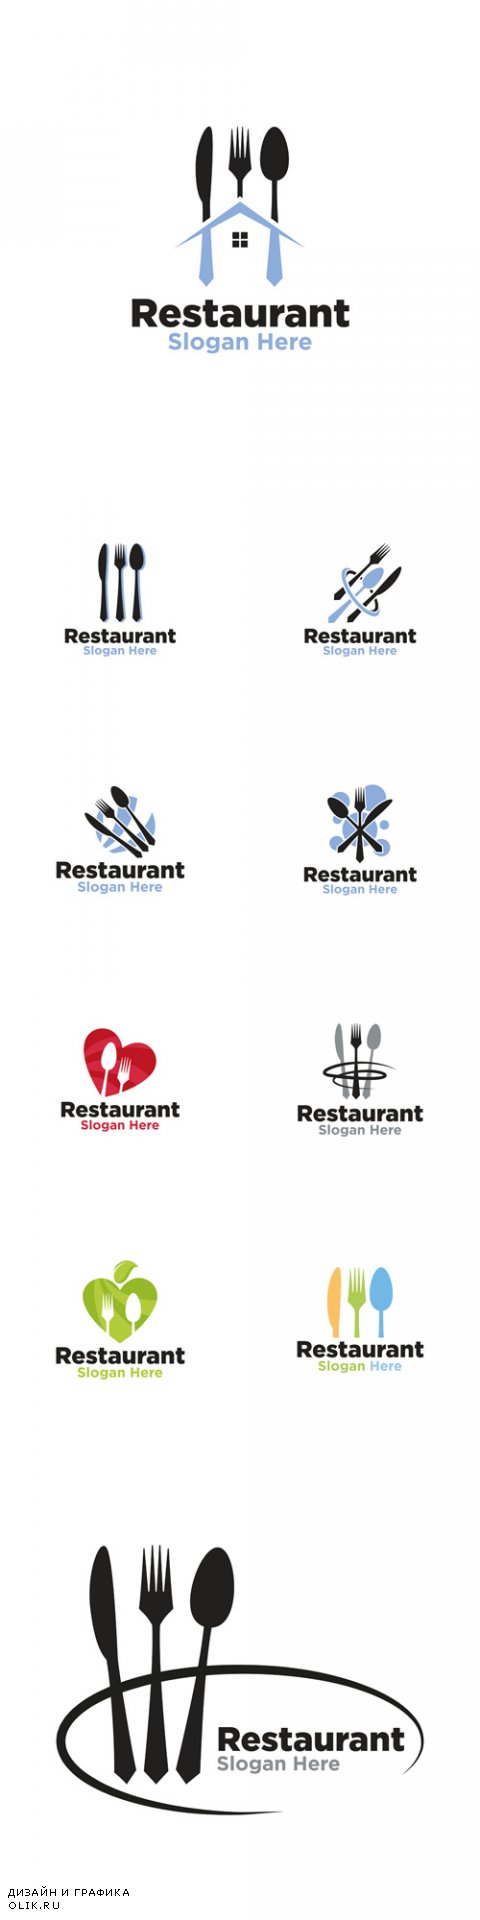 Vector Restaurant Logo Ccreative Design